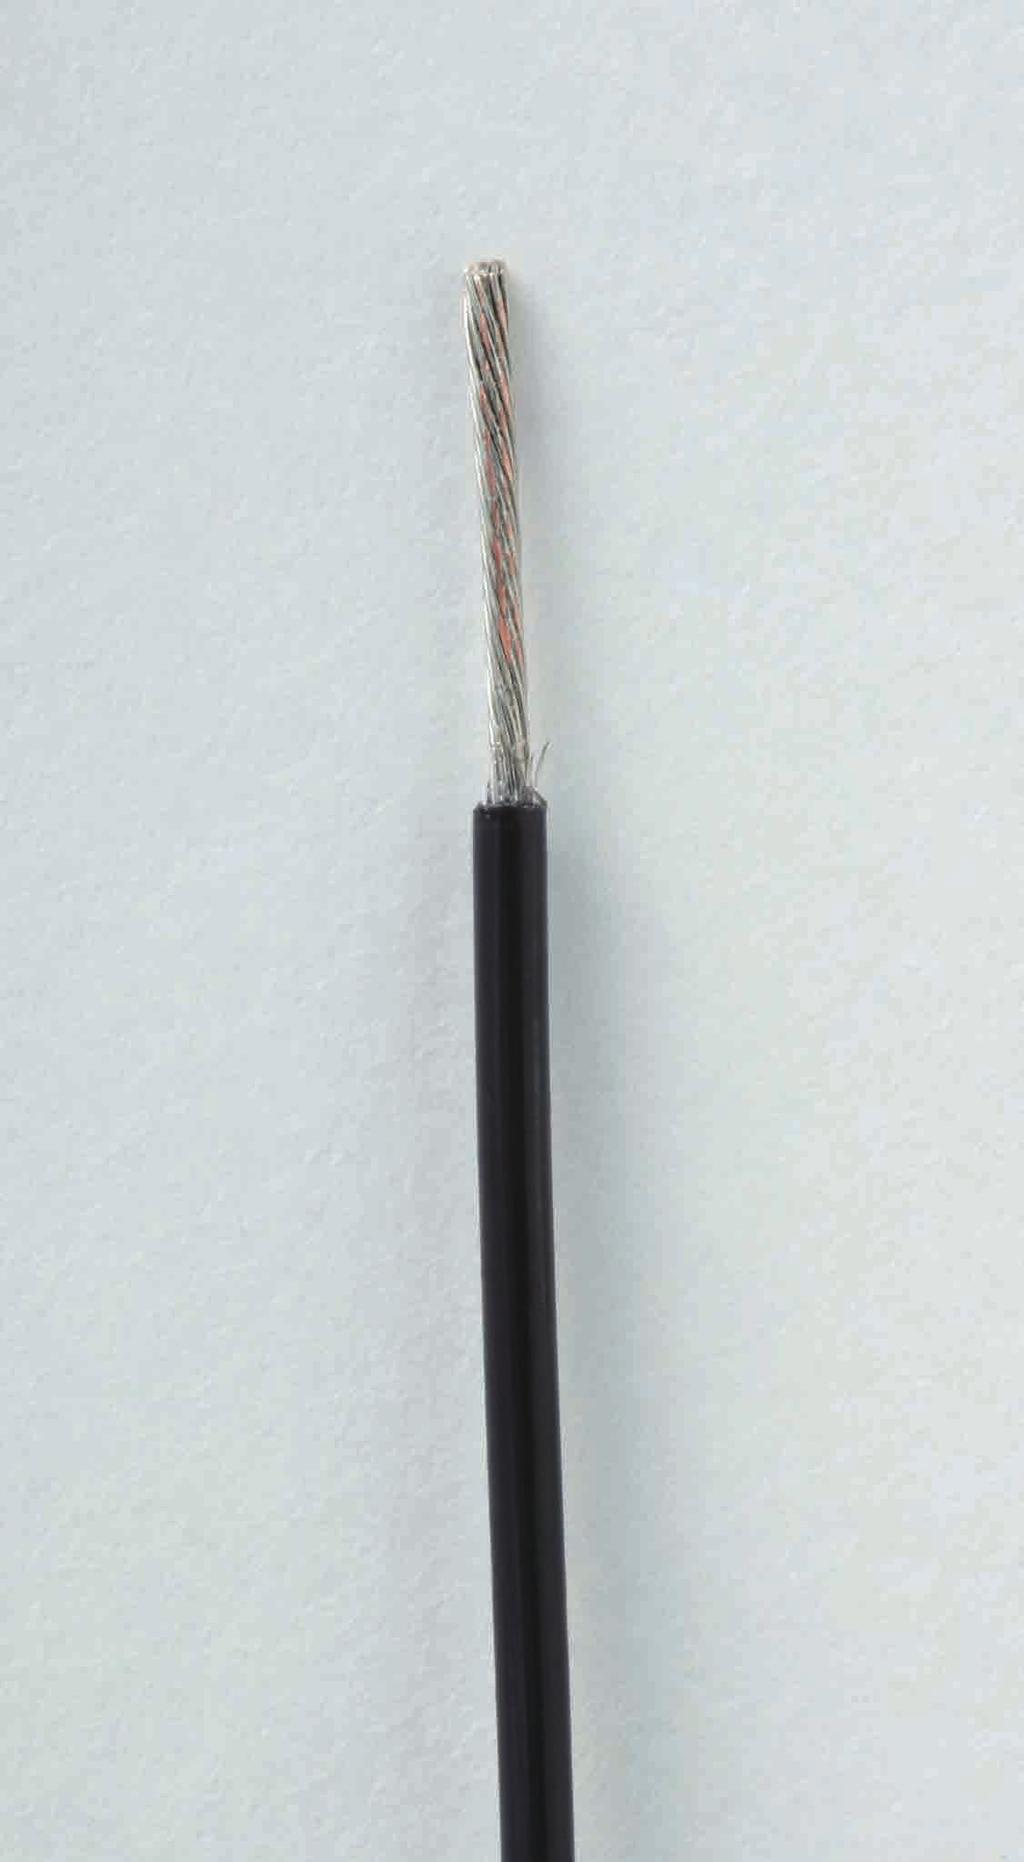 2 0.2 R15 16 G2-1601 Wire stripper blade Straight G2-1602 Wire